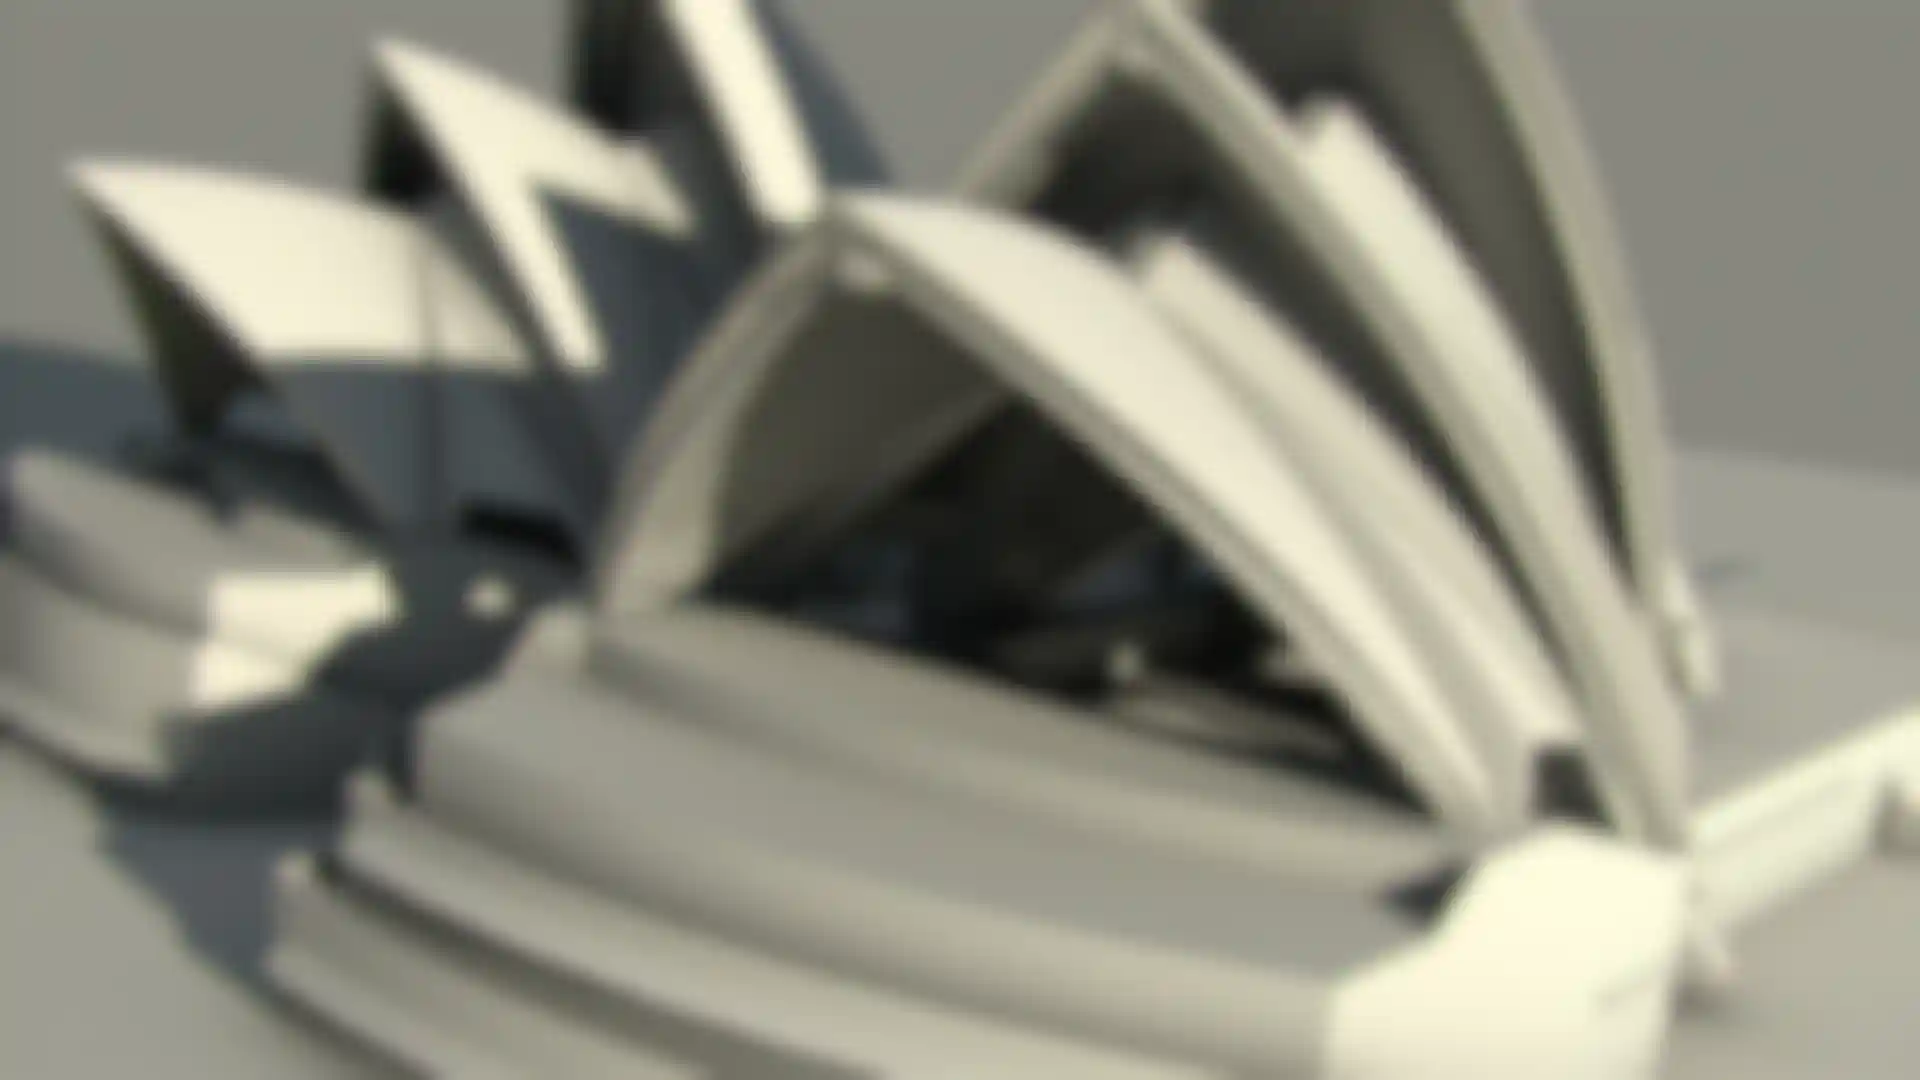 Les secrets de l'Opéra de Sydney révélés en 3D image